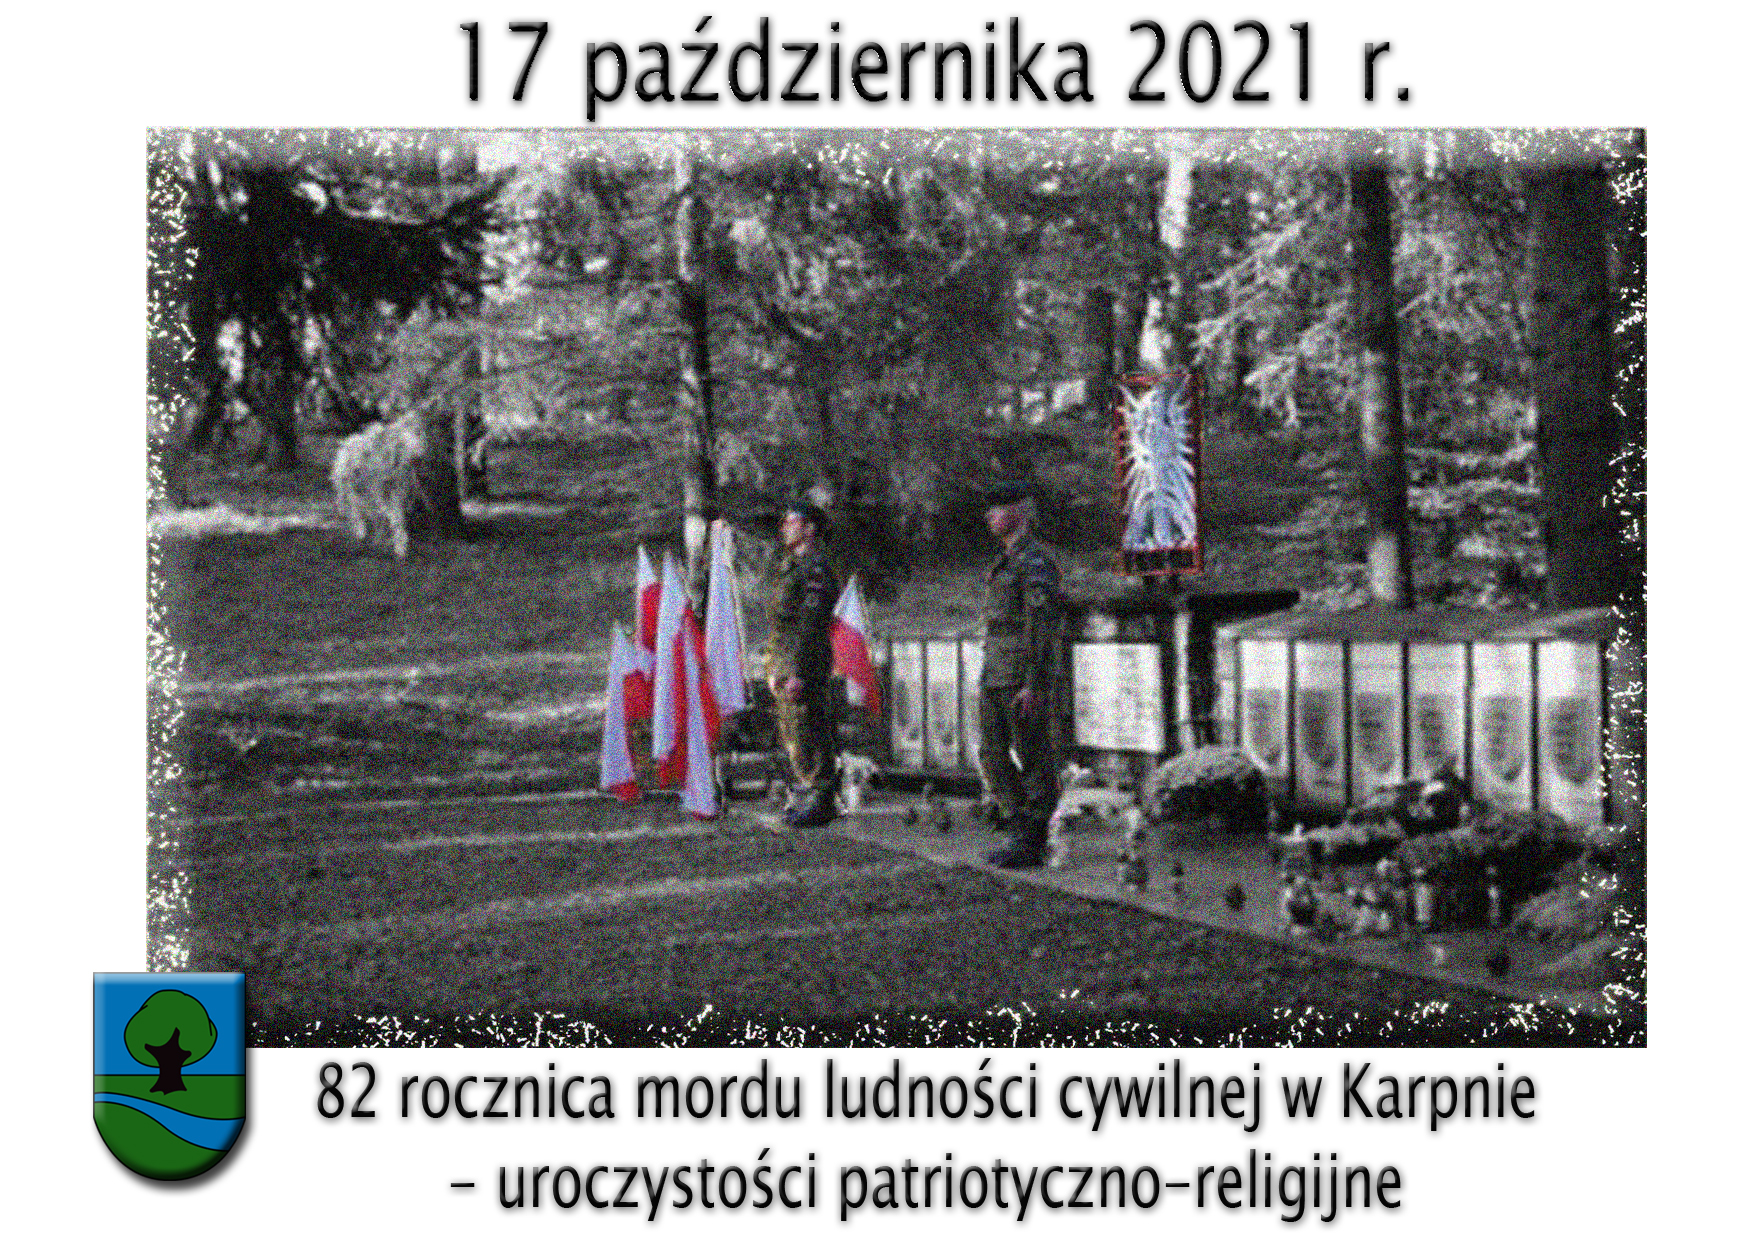 17 października 2021r. 82 rocznica mordu ludności cywilnej w Karpnie uroczystości patriotyczno-religijne